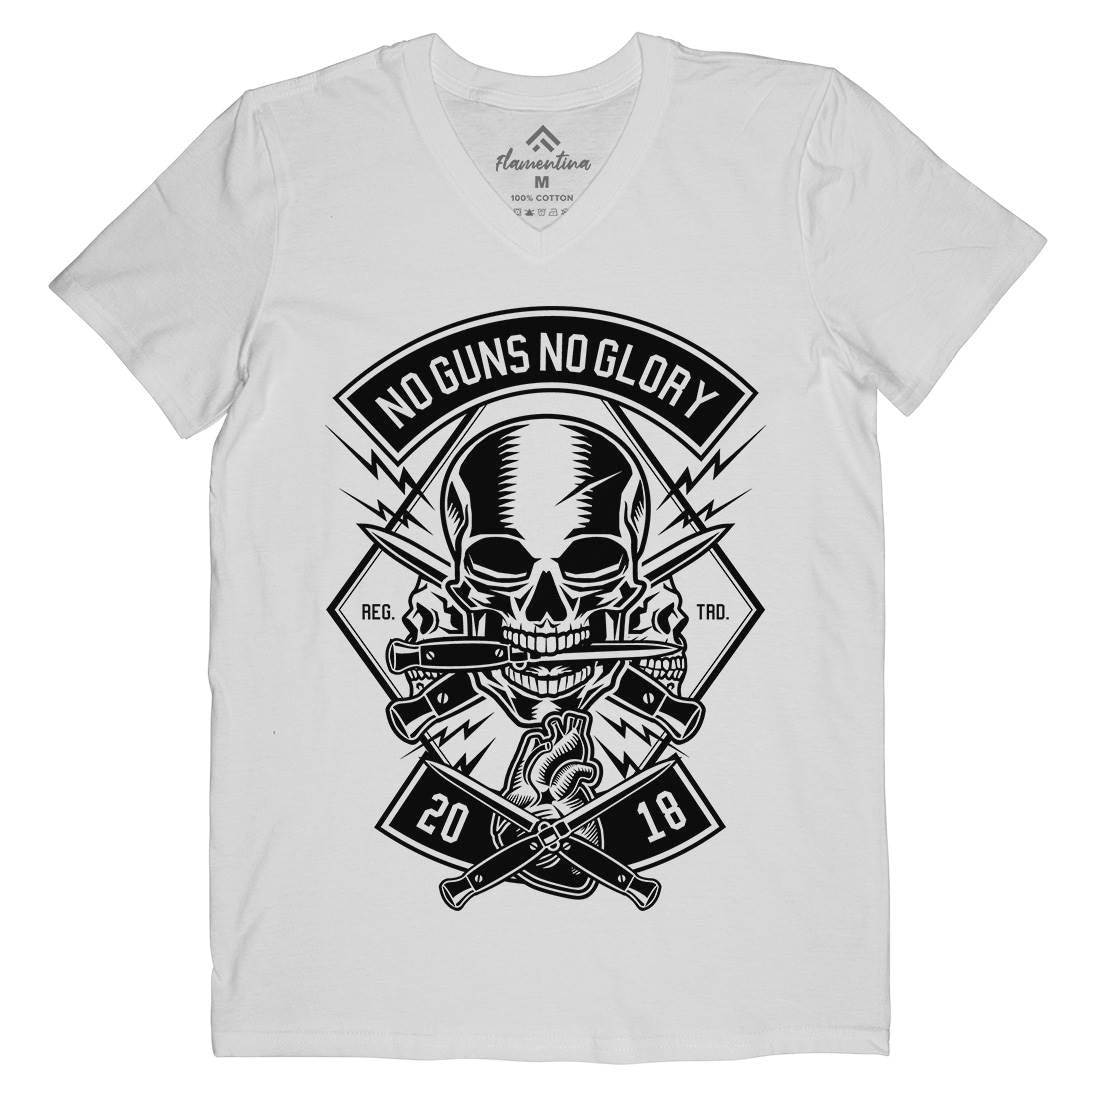 No Guns No Glory Mens V-Neck T-Shirt Army B588